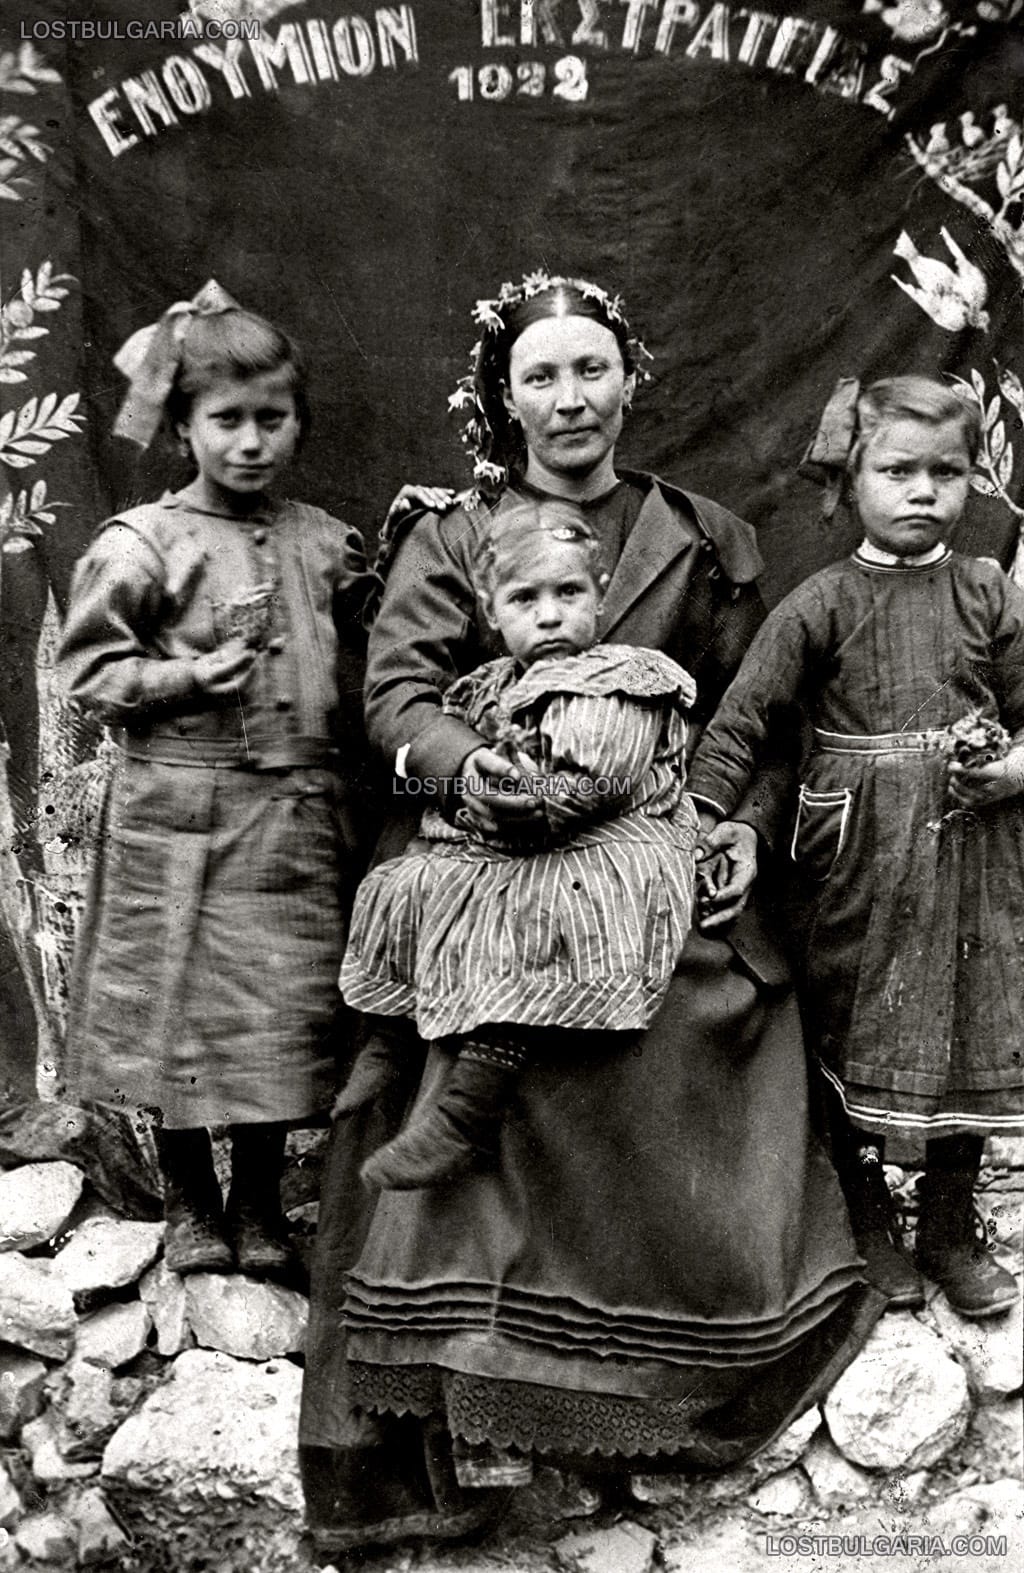 Млада жена с три деца пред знаме с надпис на гръцки "Спомен кампания" (ΕΝΘΥΜΙΟΝ ΕΚΣΤΡΑΤΕΙΑΣ), 1922 г., вероятно Пазарджик